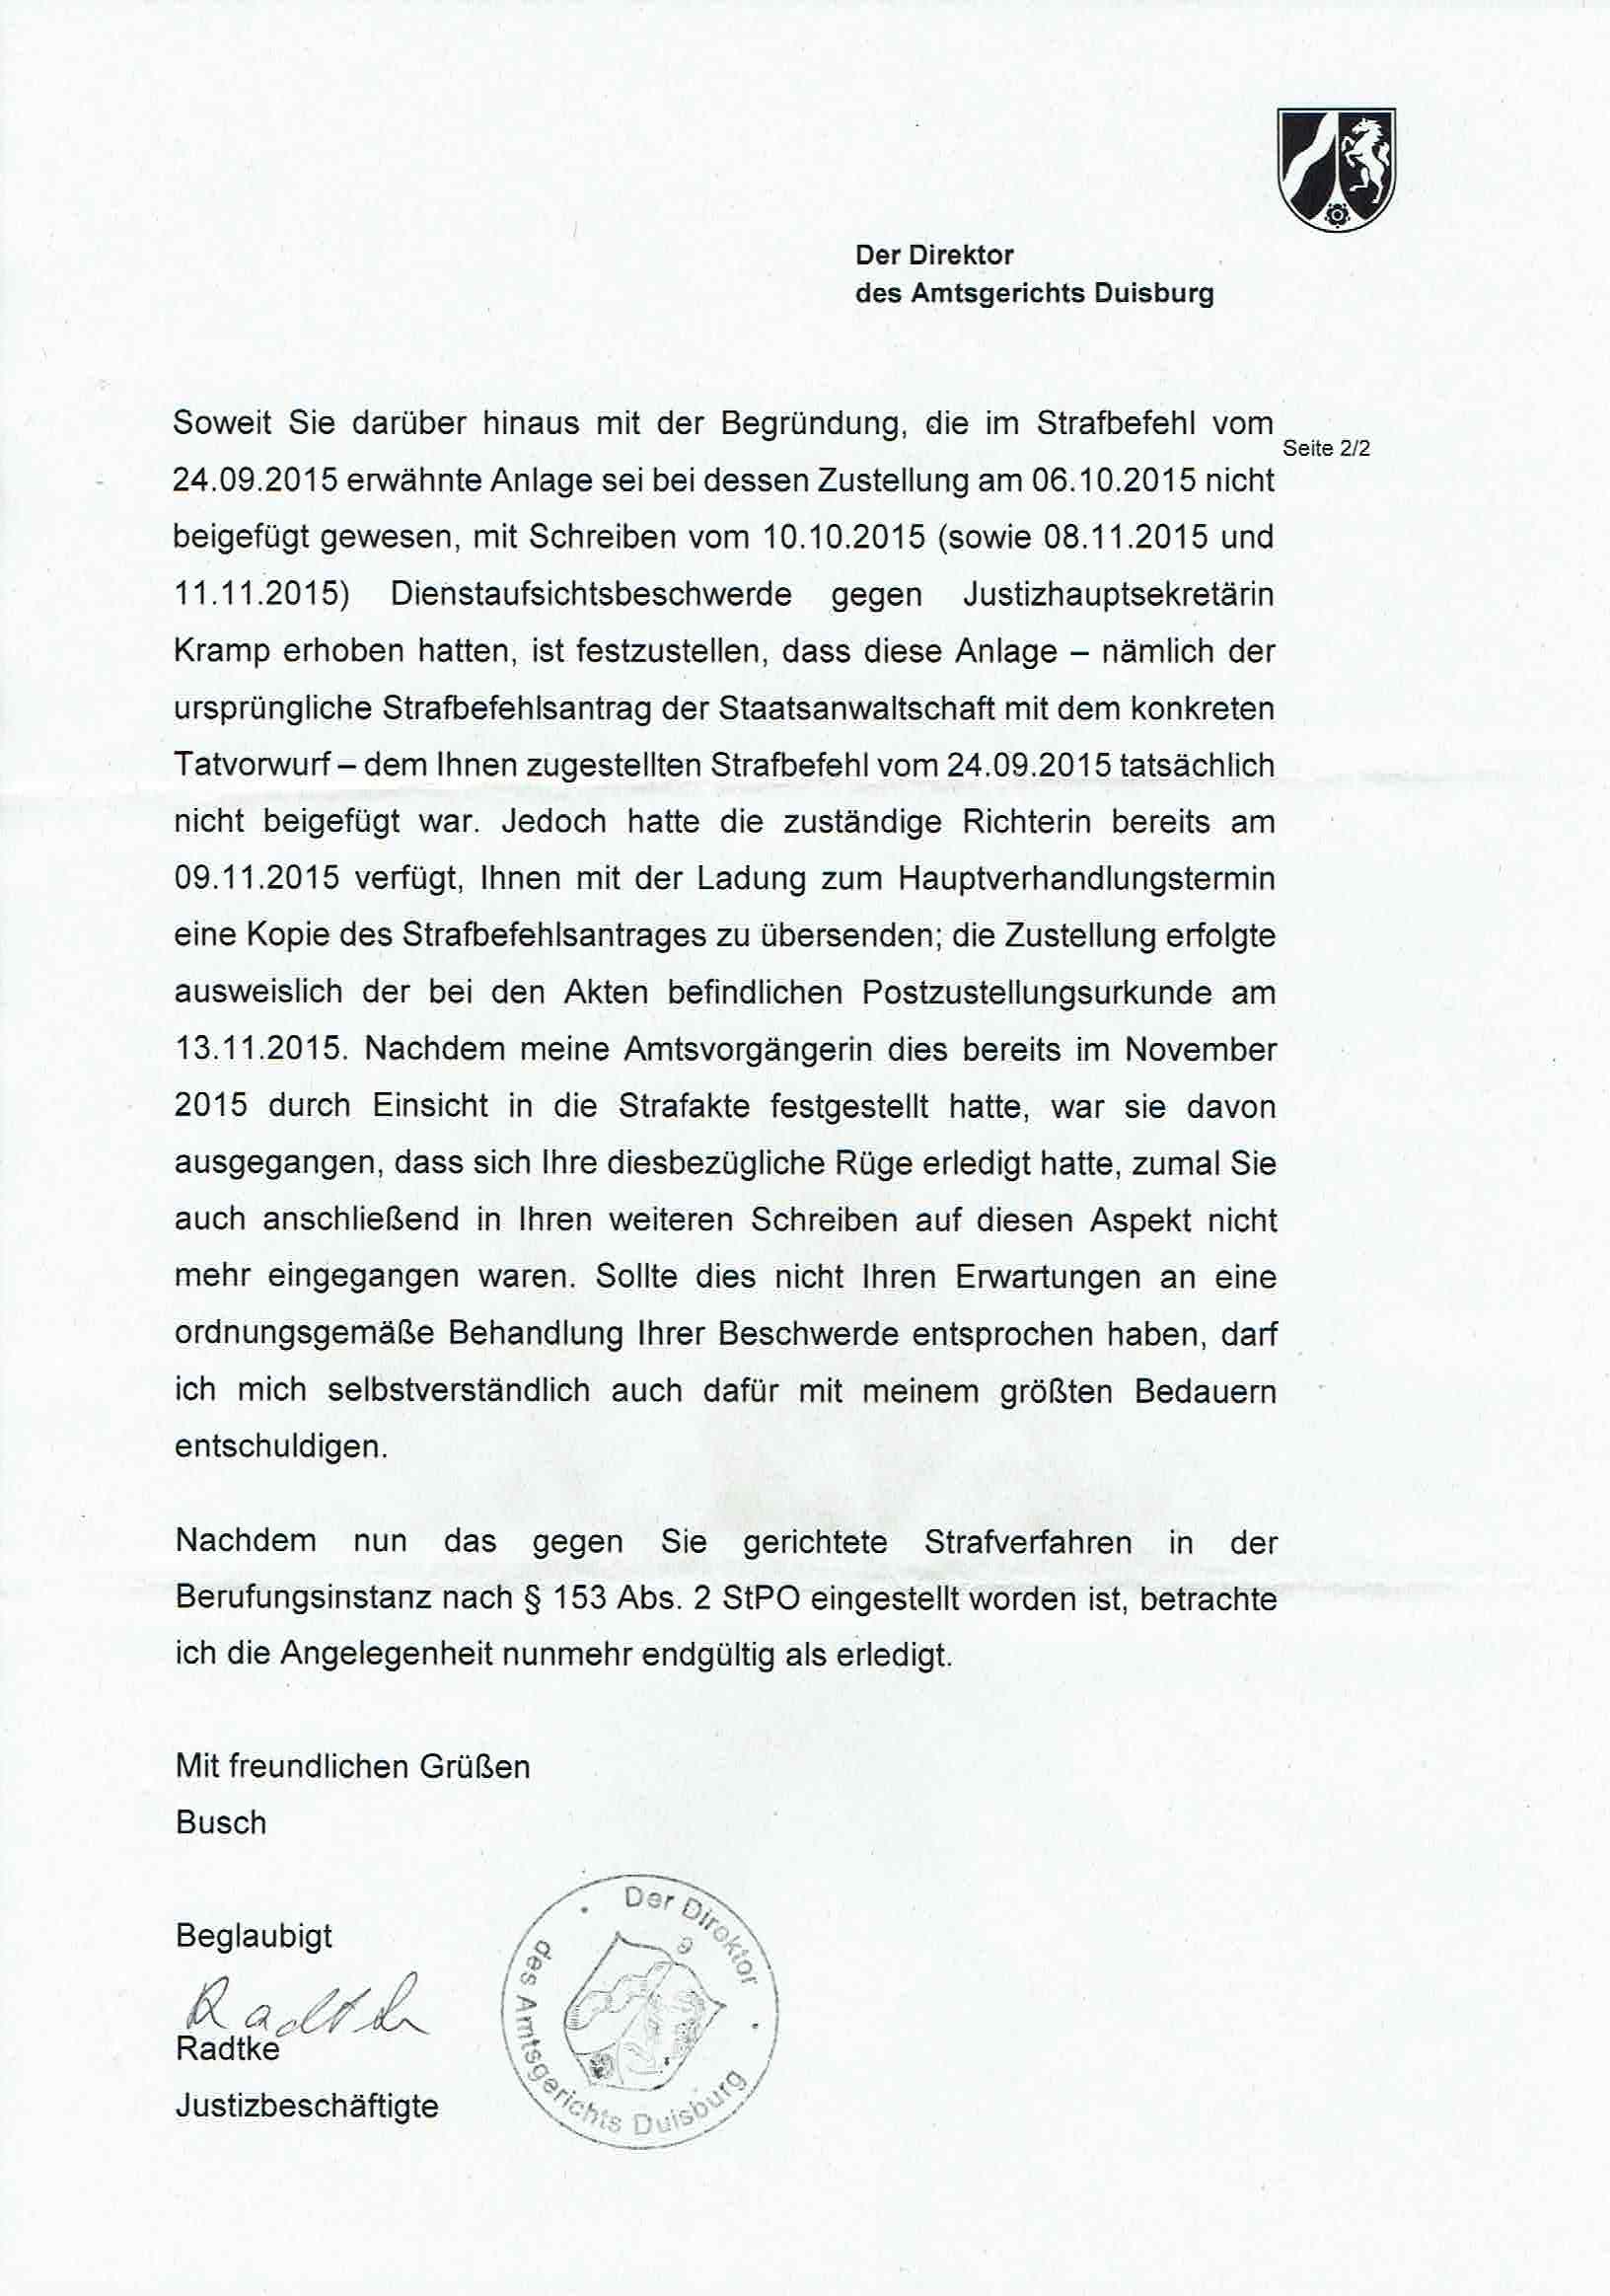 Antwort des Direktors des Amtsgerichts Duisburg vom 19.09.2017, Seite 2